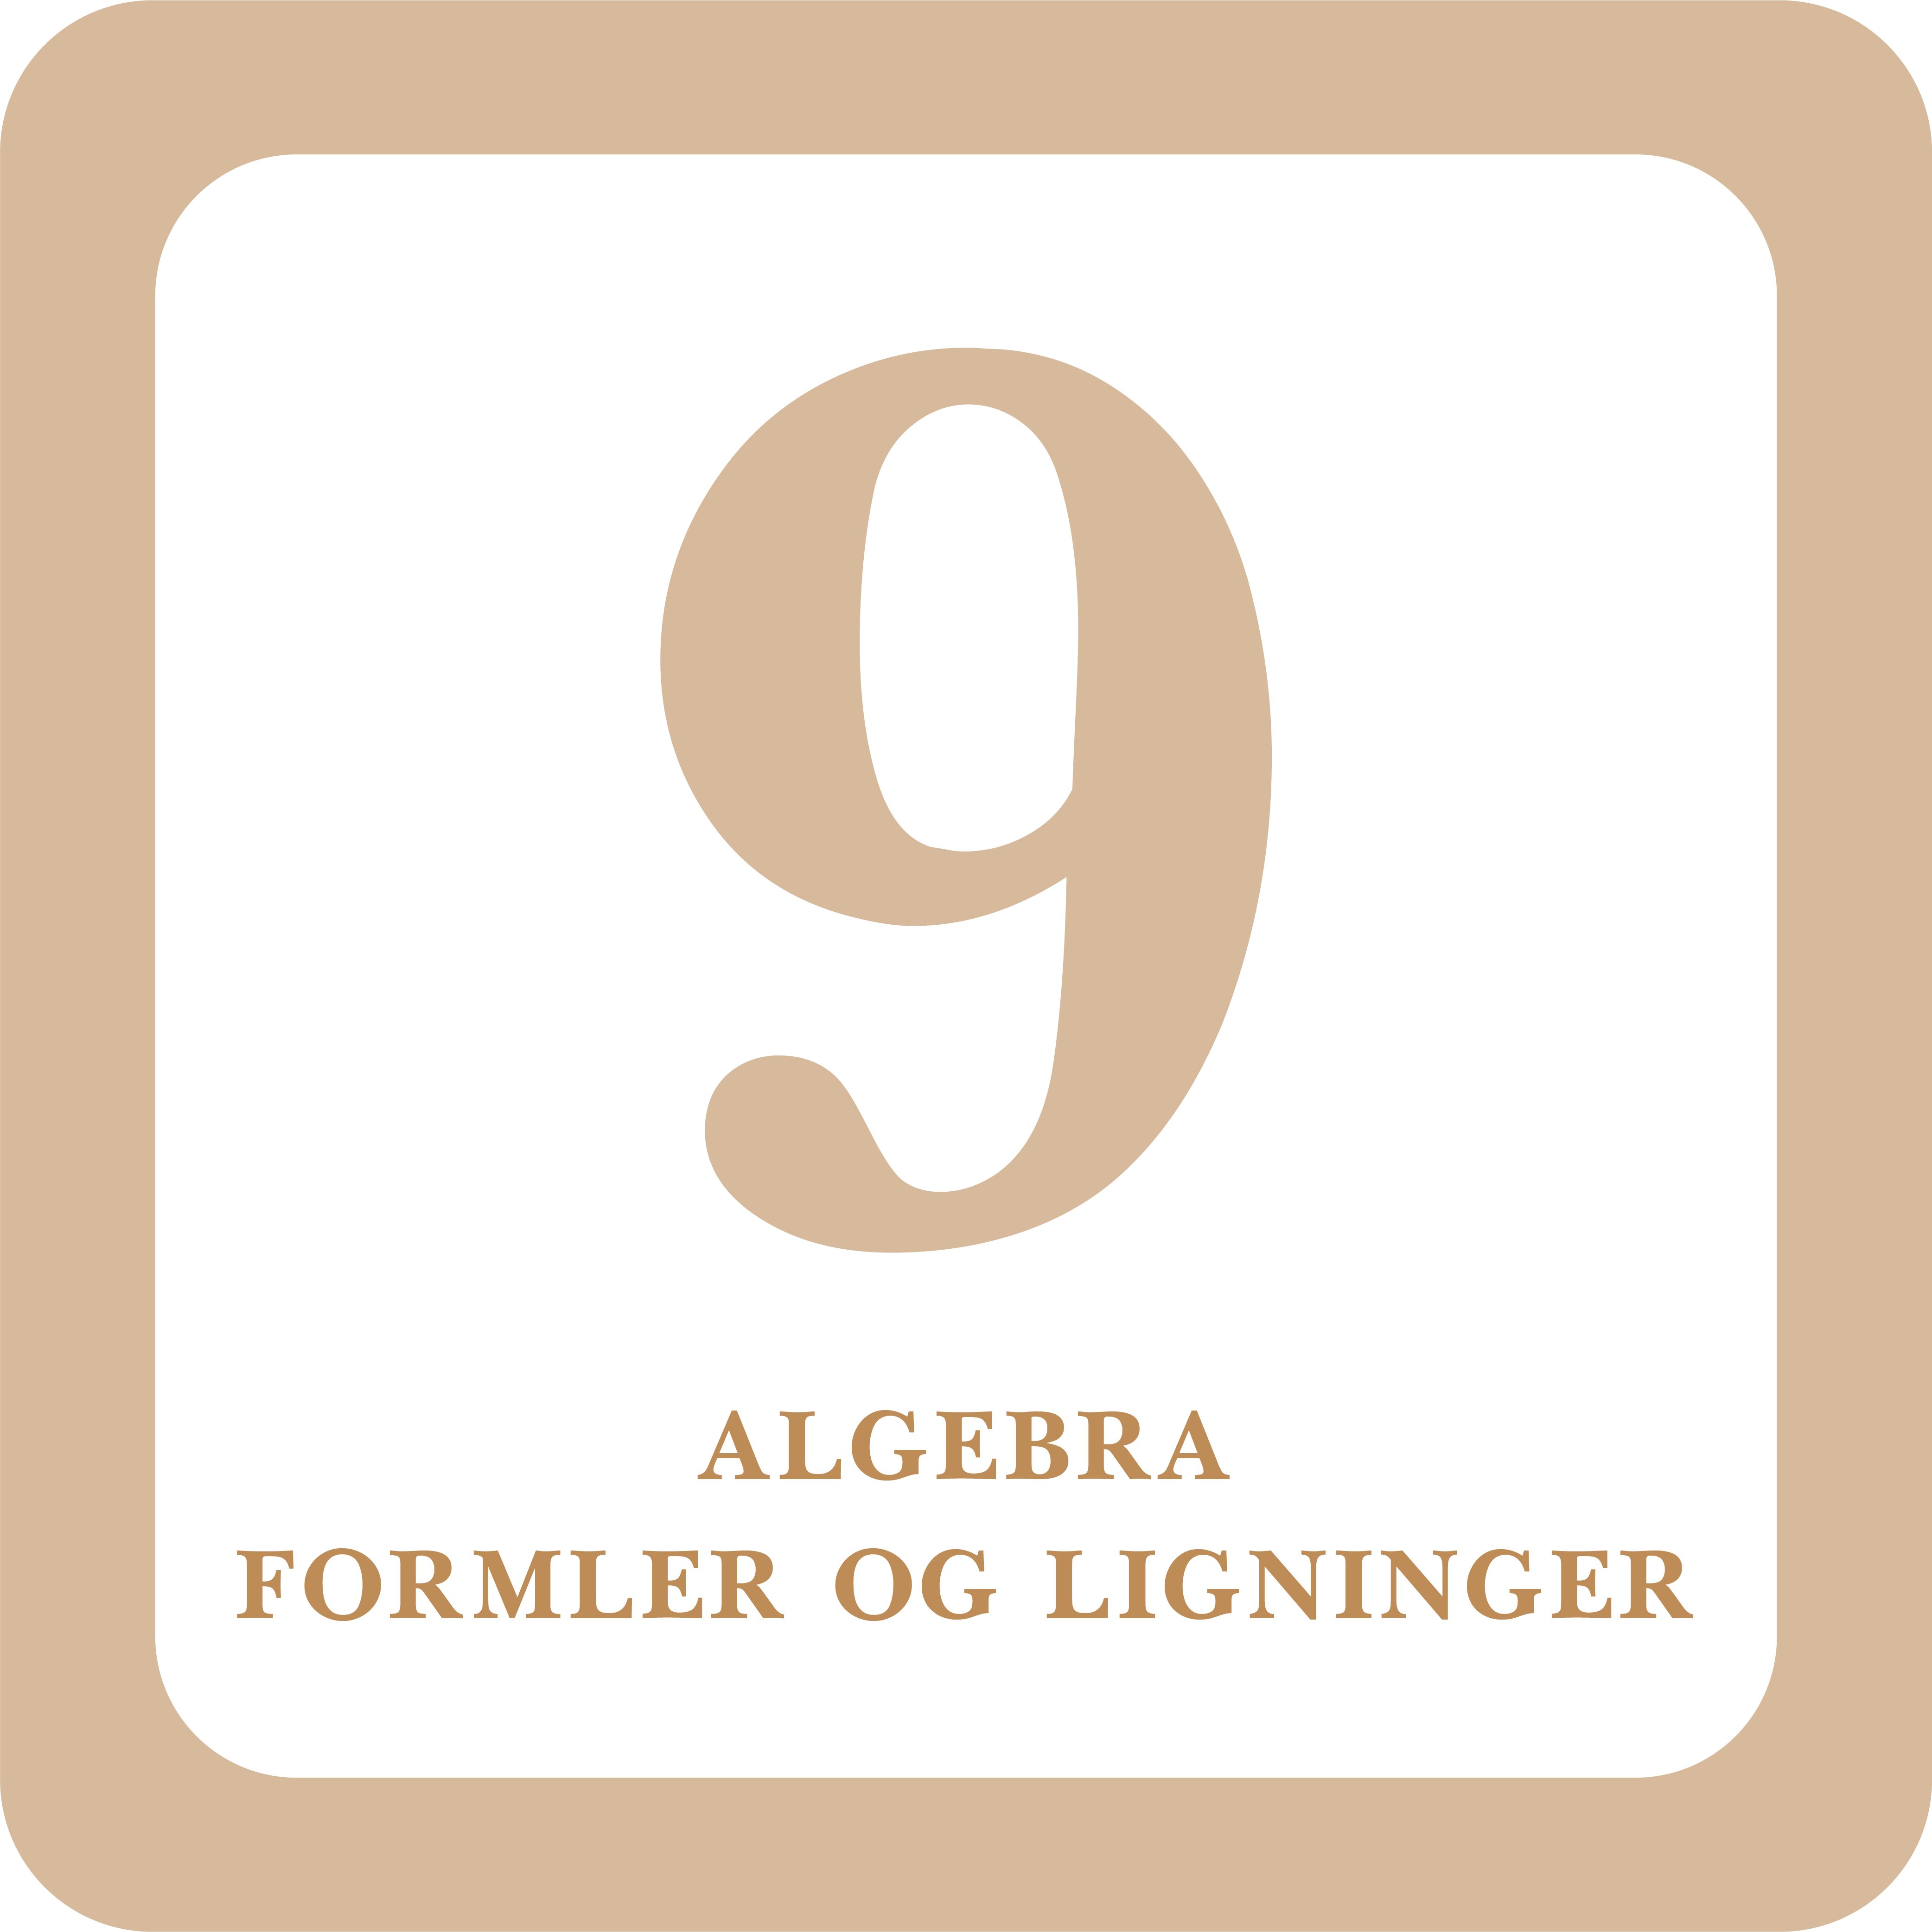 Read more about the article Algebra formler OG Ligninger